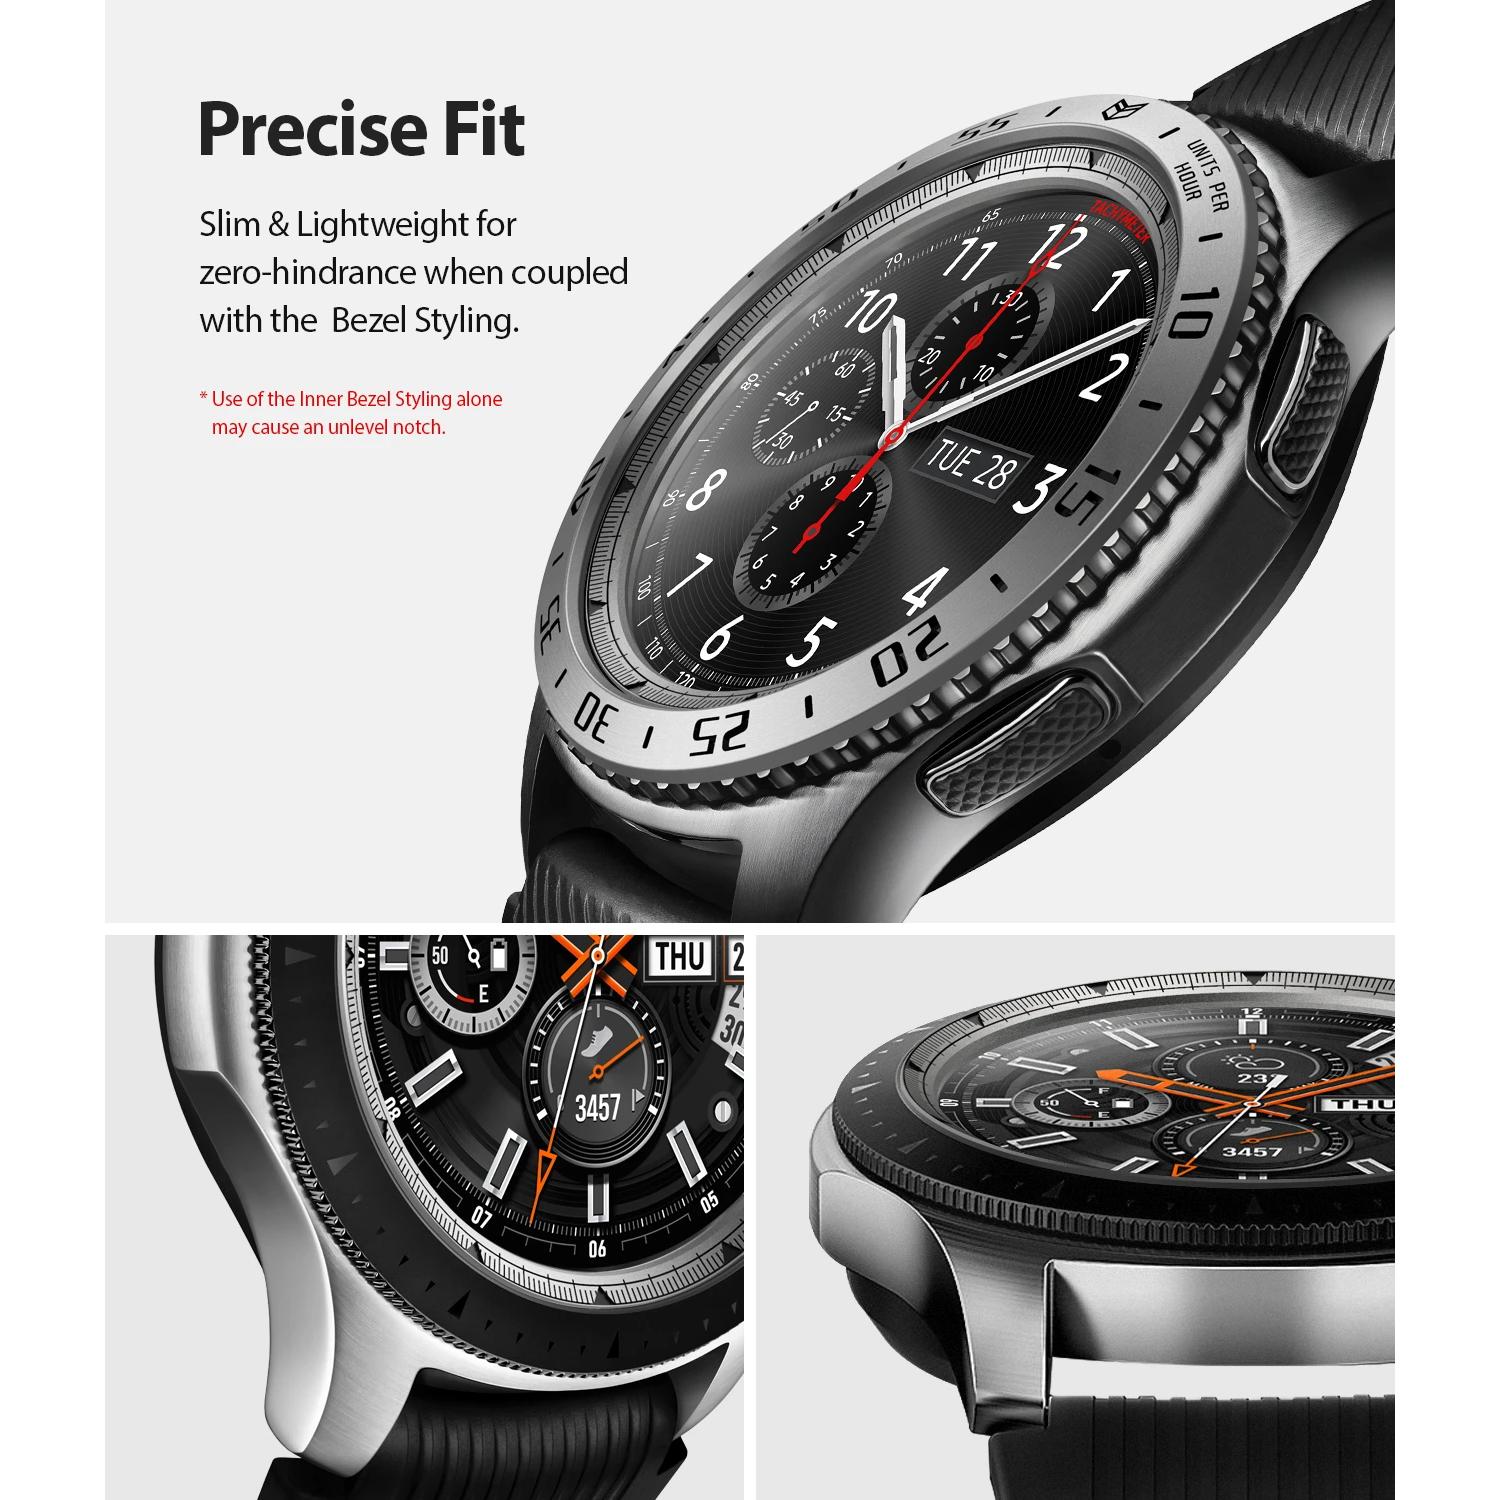 Inner Bezel Styling Galaxy Watch 46mm/Gear S3 Silver